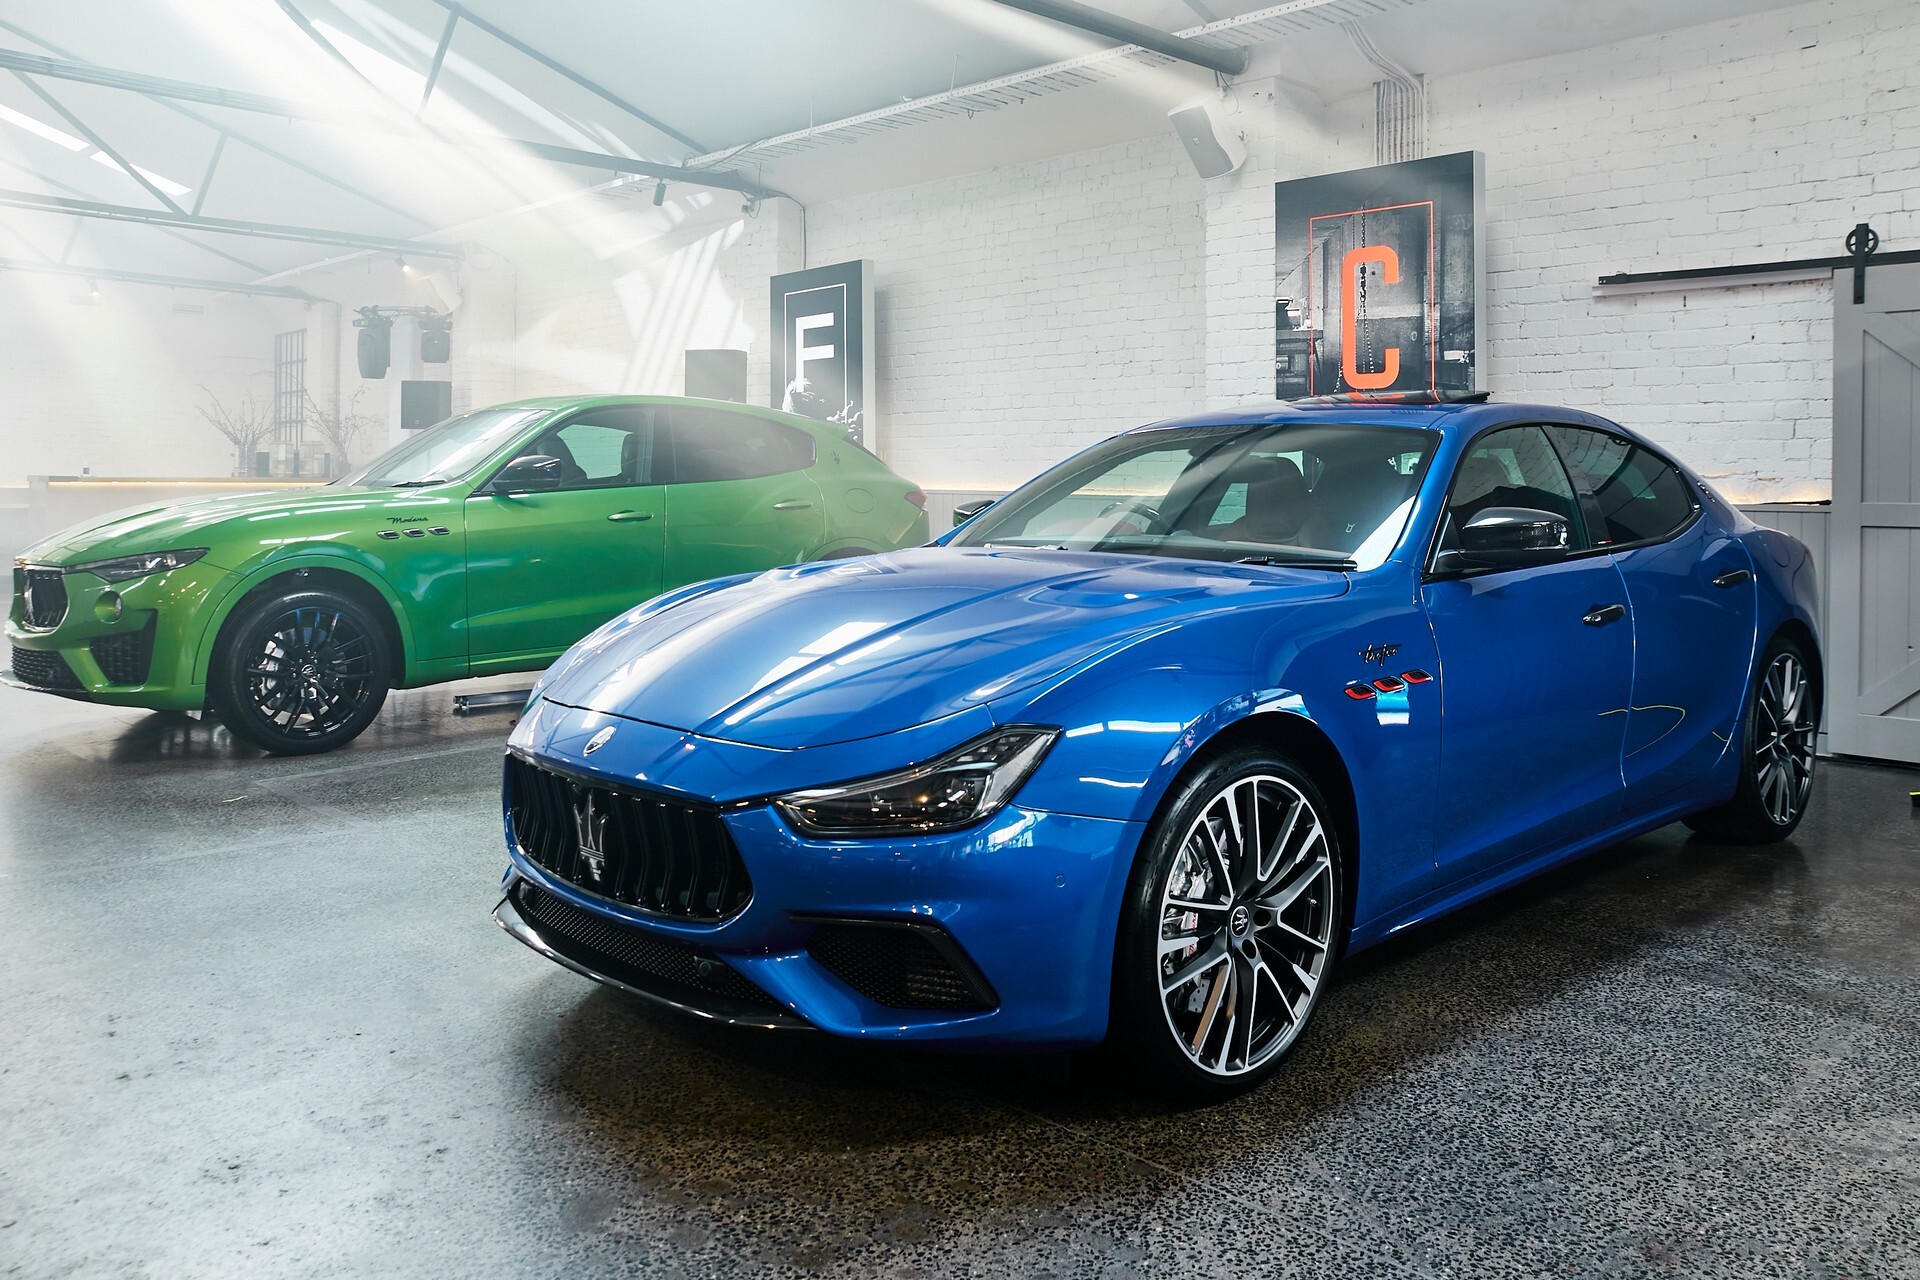 Maserati показала эксклюзивные модели для Австралии